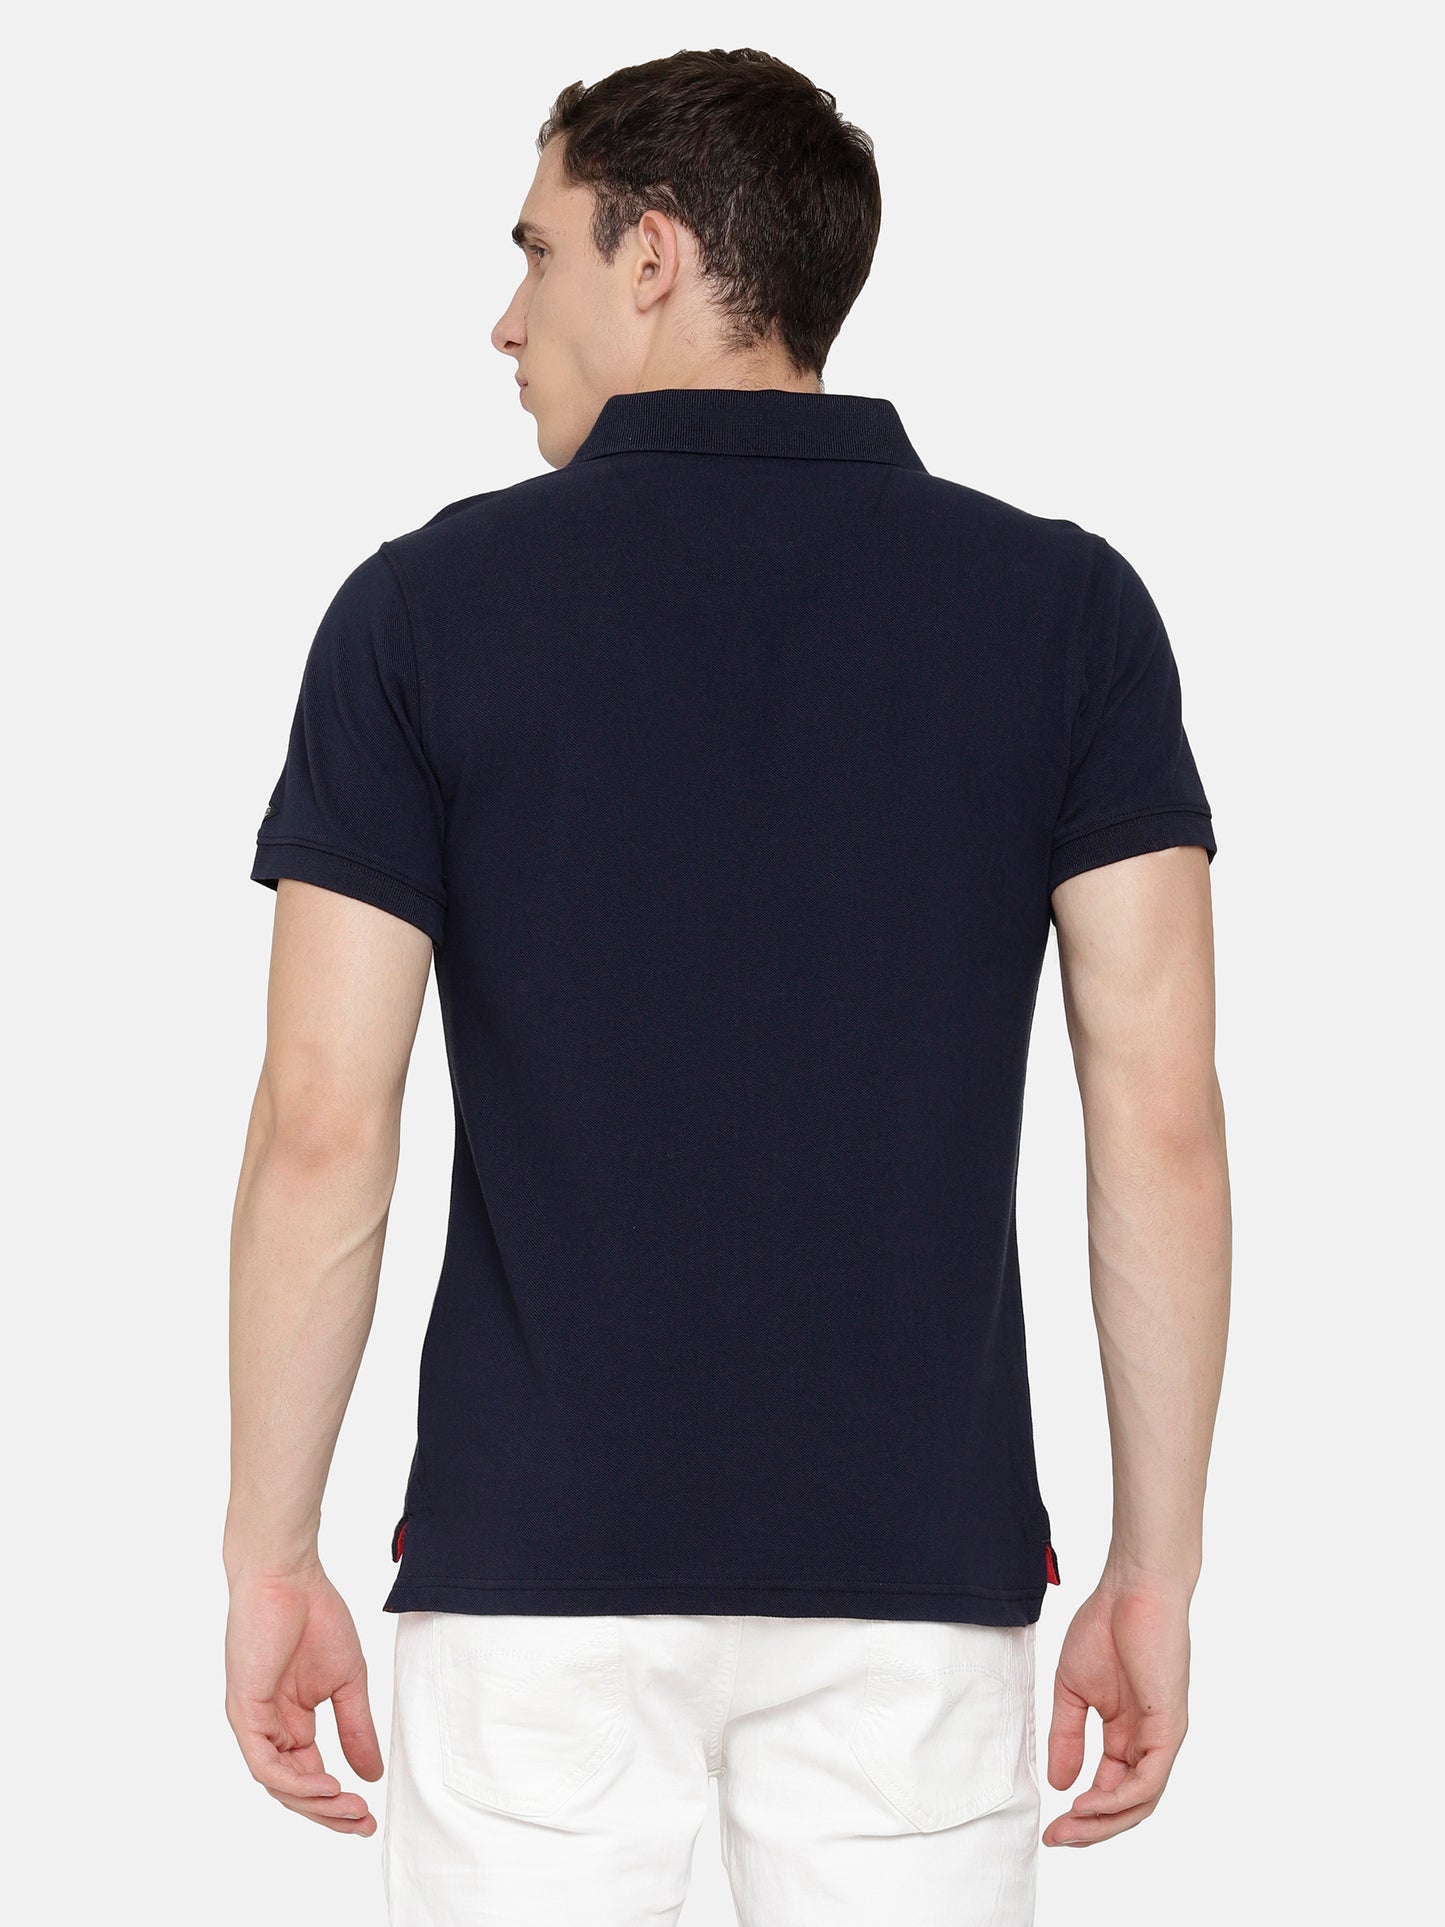 Navy color Polo T-Shirt pique